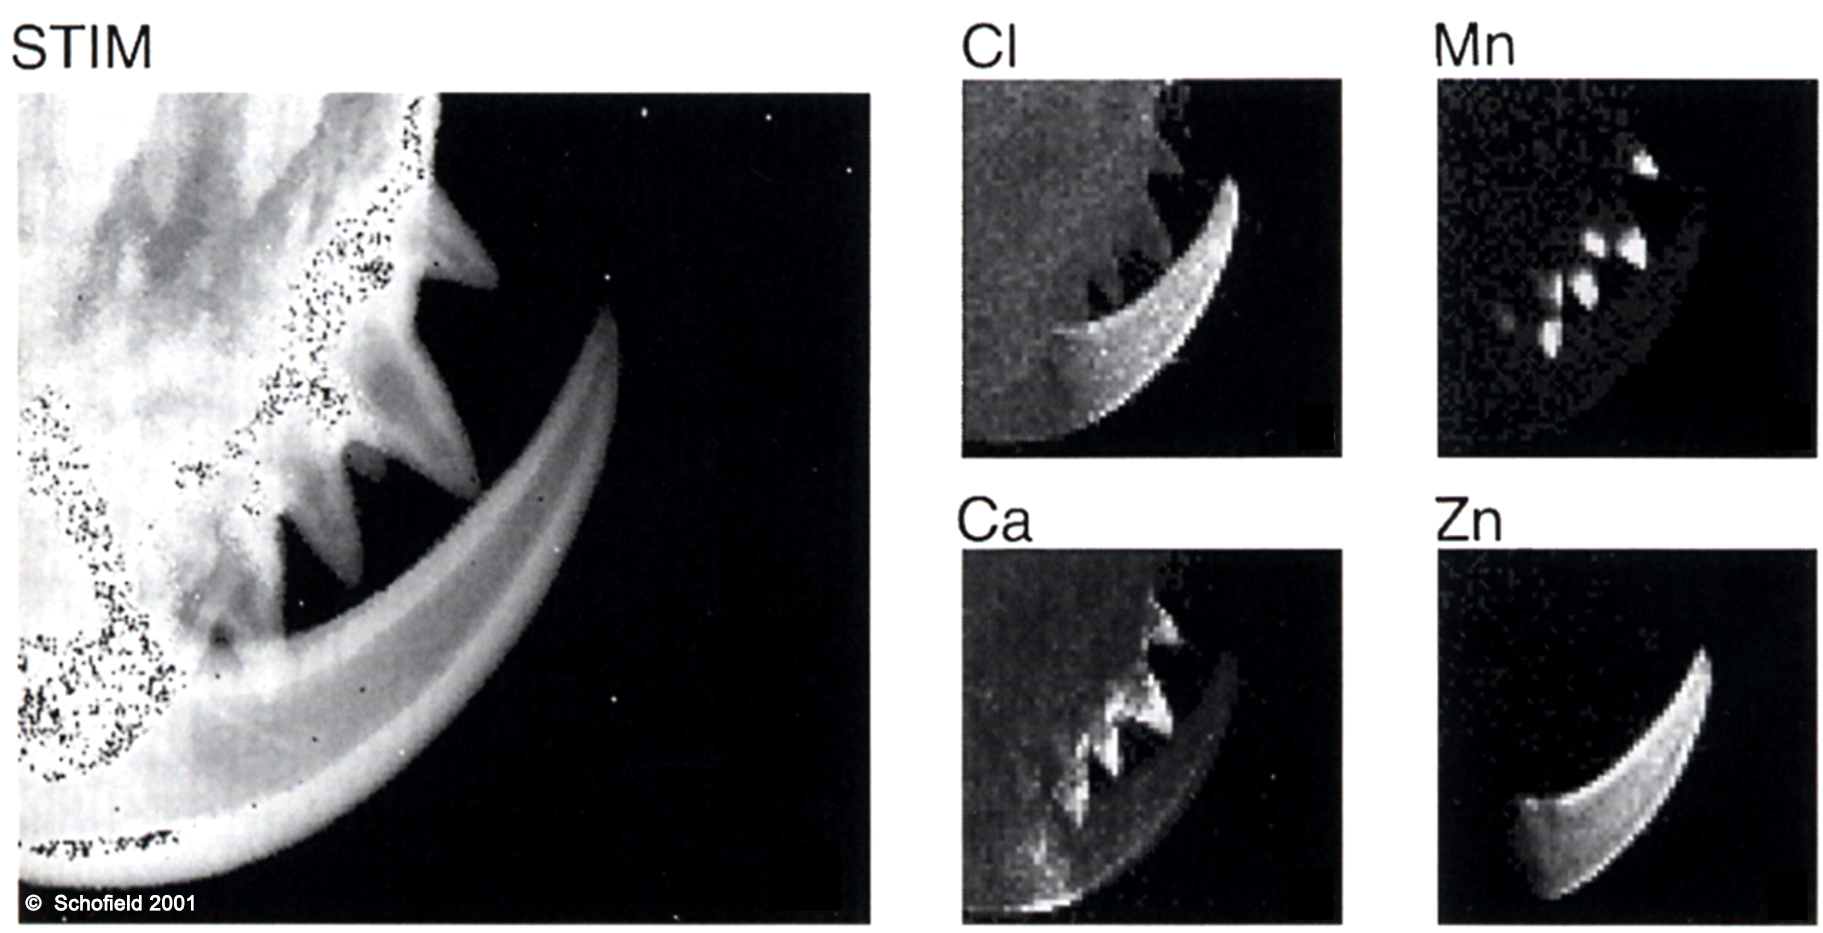 מפוי רנטגן של כליצרות ושיני כליצרות של גלגלן הצלב.
מימין ניתן לראות את הפיזור המשתנה של המתכות השונות.